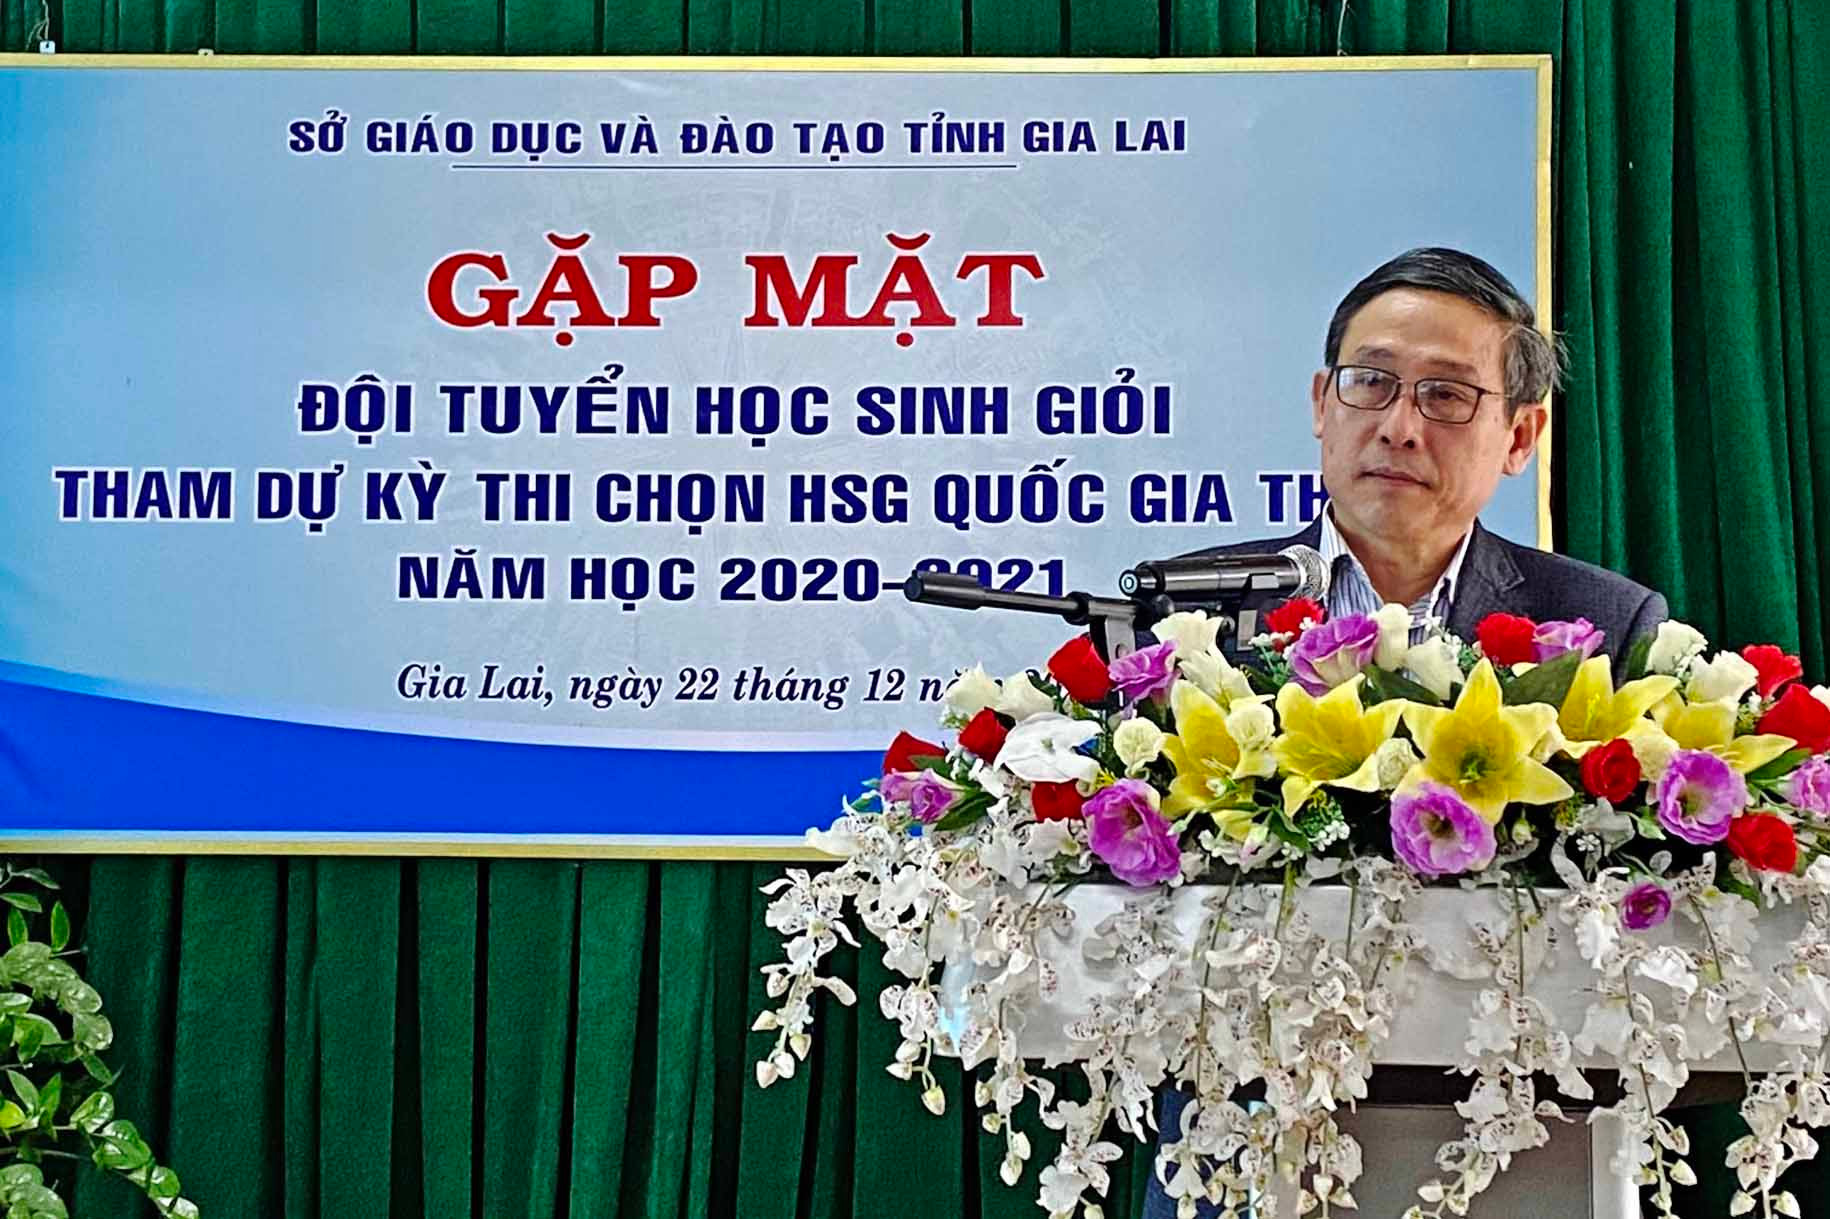 Ông Lê Duy Định, Giám đốc Sở Giáo dục và Đào tạo tỉnh Gia Lai.